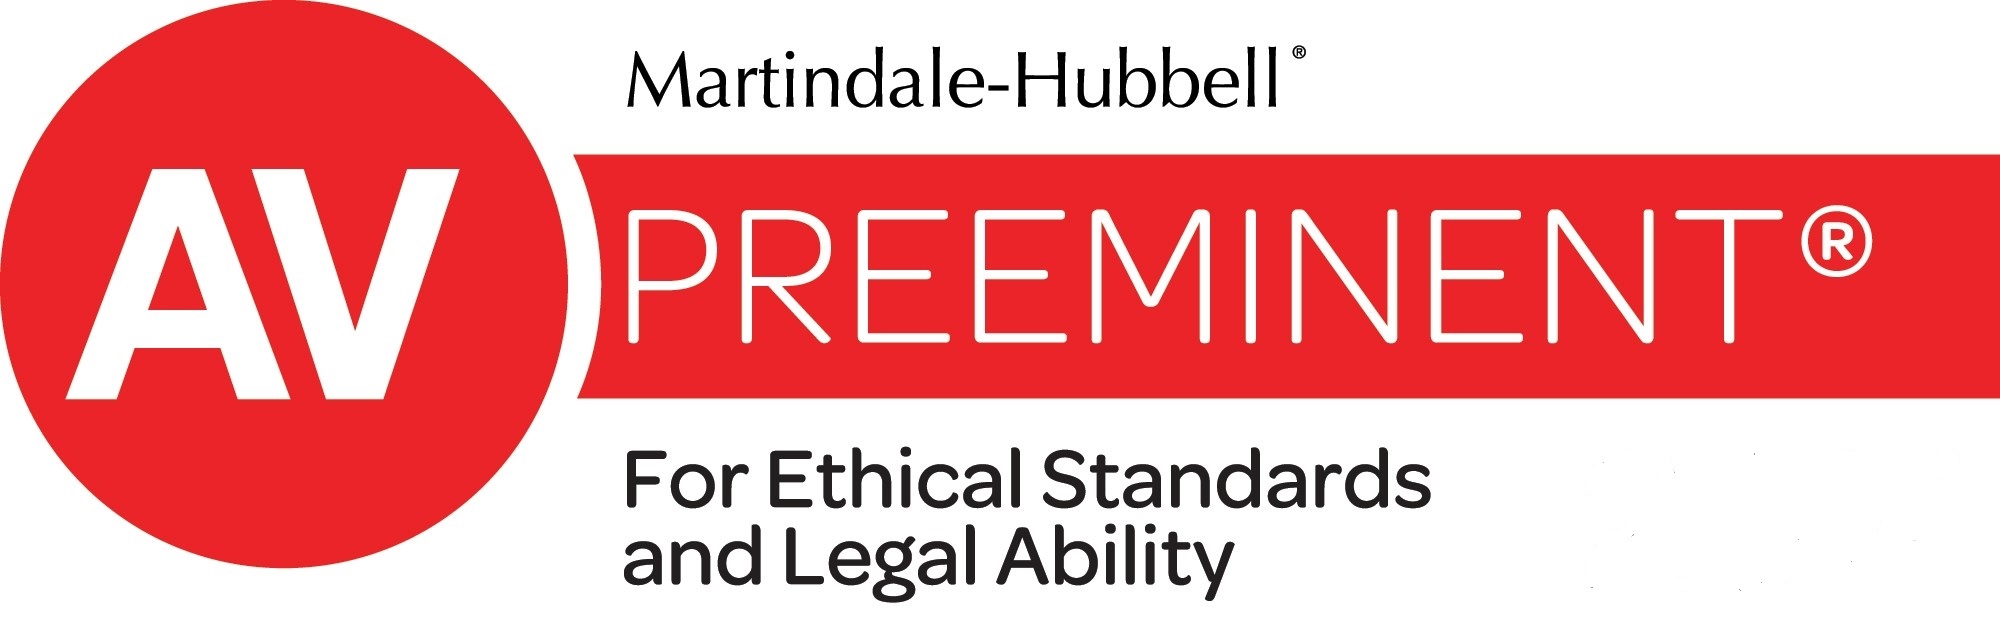 Martindale-Hubbell® AV Preeminent Badge